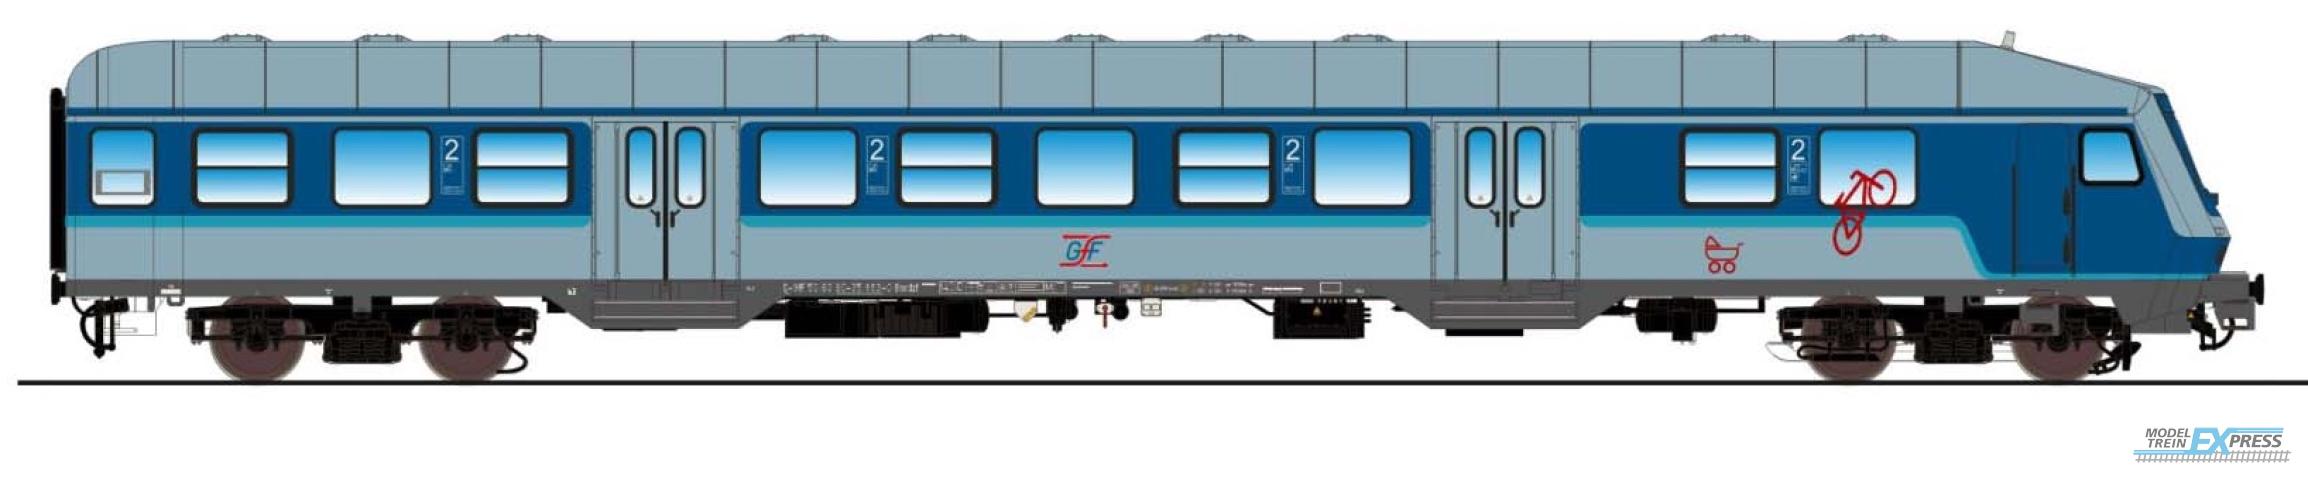 Esu 36070 n-Wagen, H0, Bnrdzf 483.1, 80 80-35 163-0, Steuerwagen, GfF Ep. VI, blau-weiß, DC